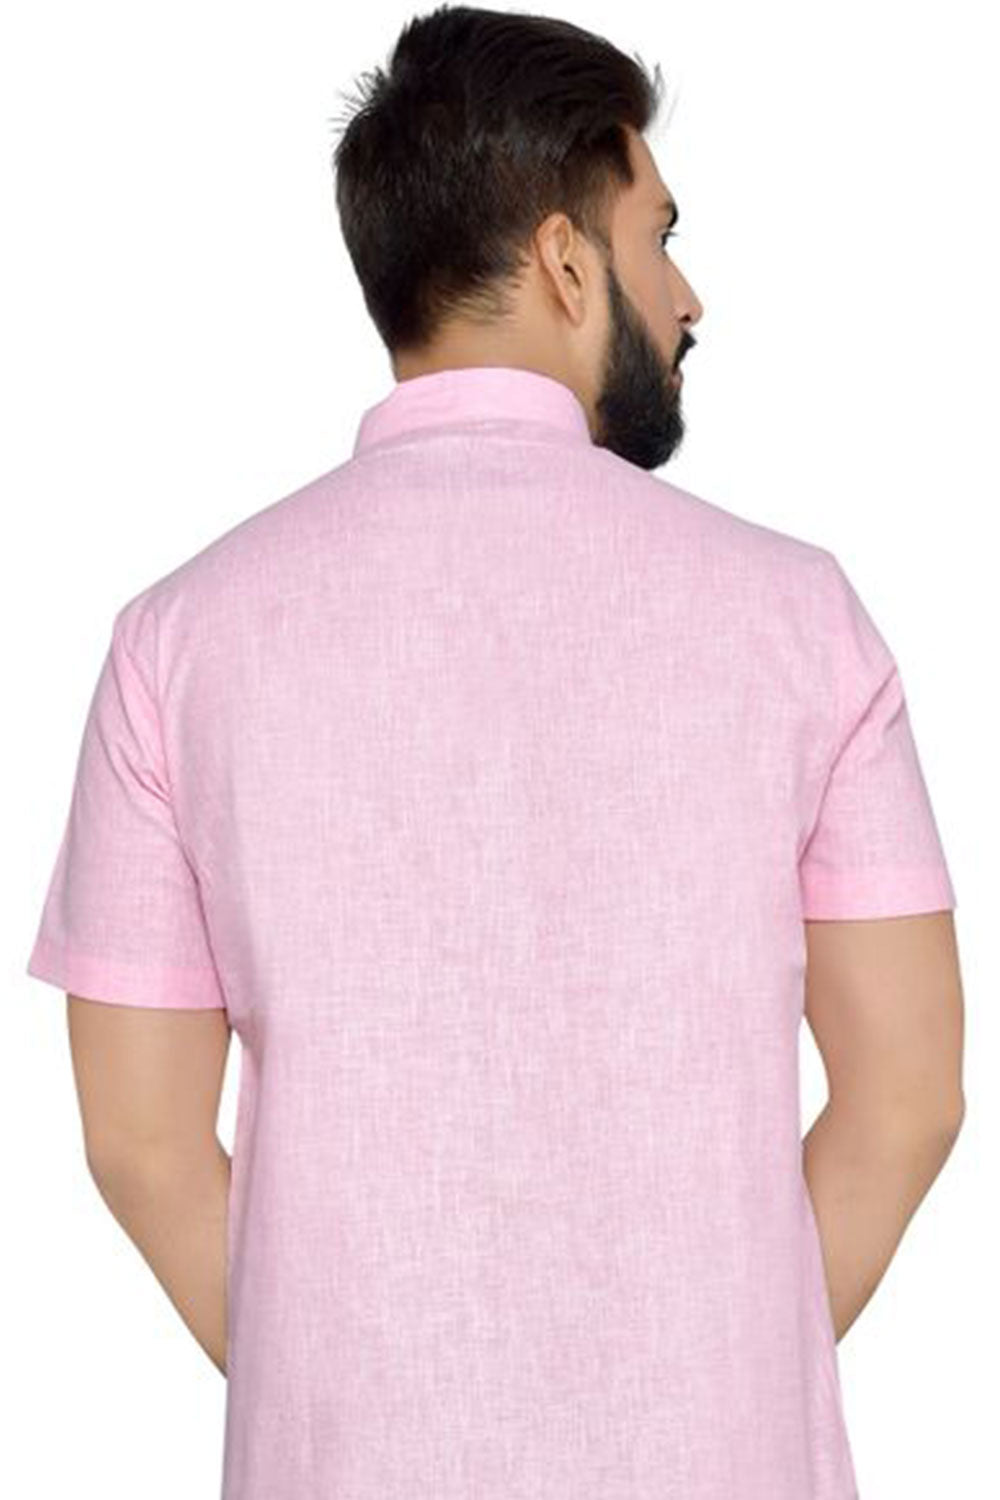 Buy Men's Blended Cotton Solid Kurta in Pink Online - Side